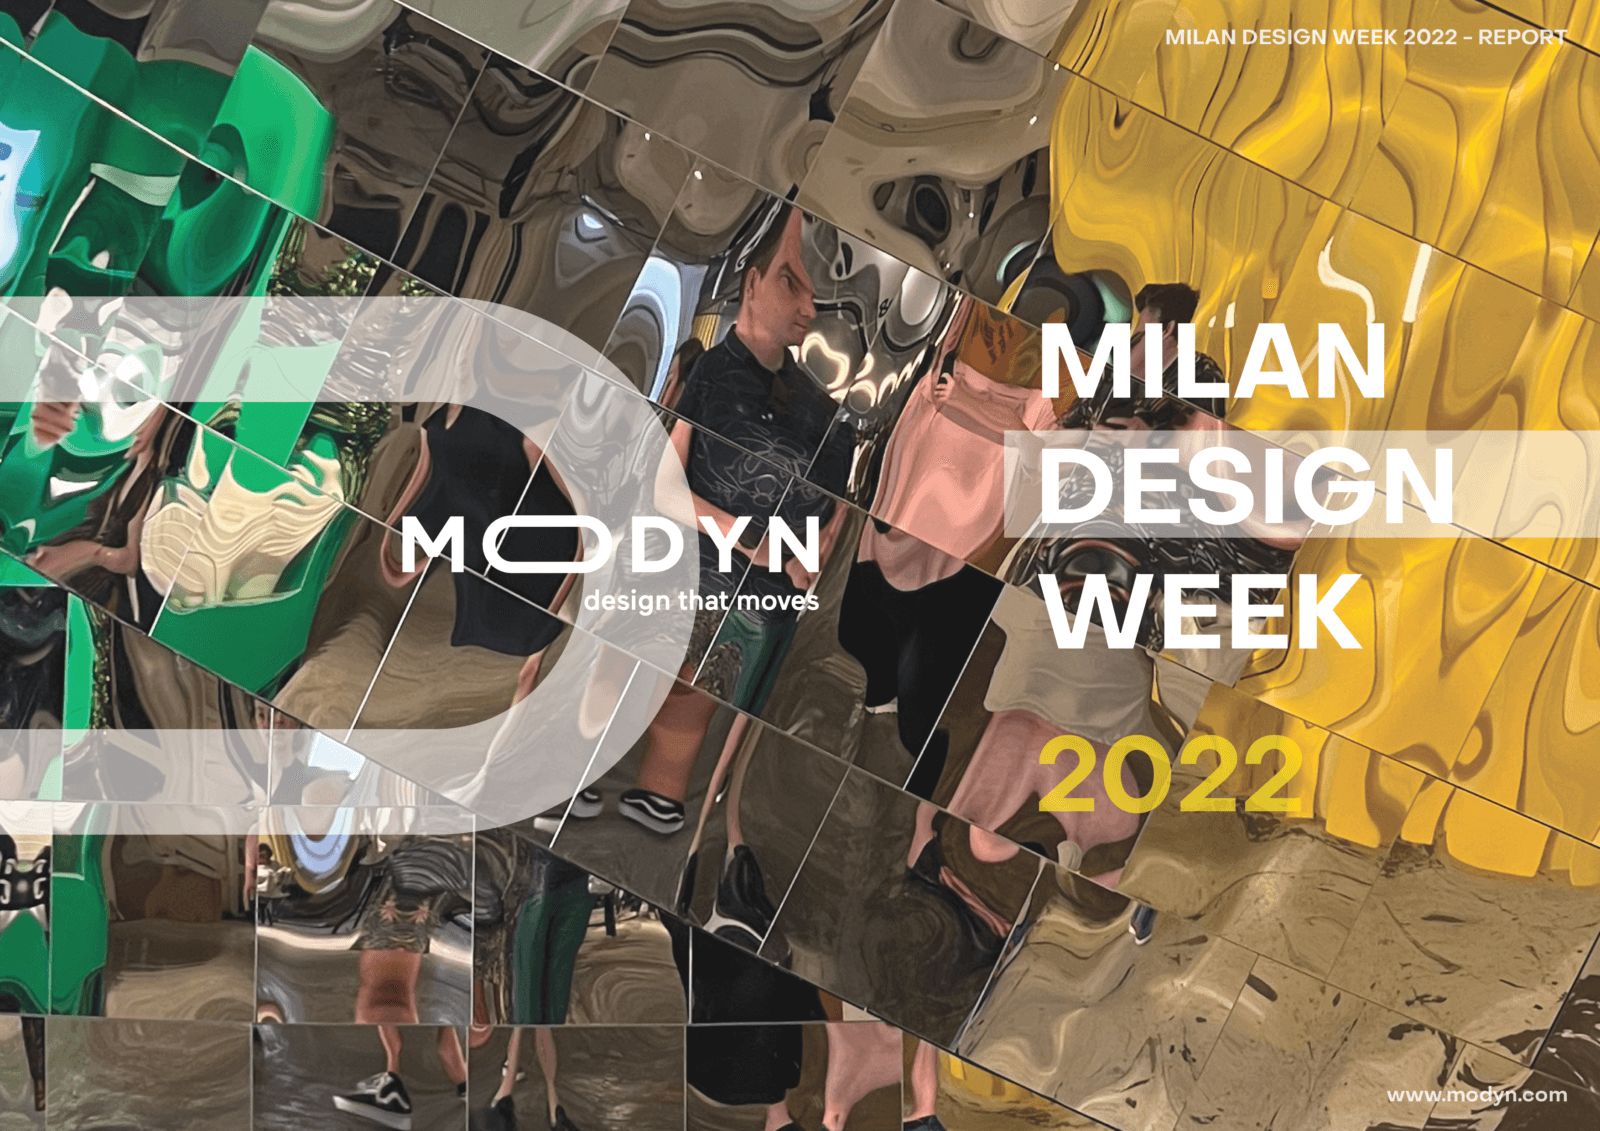 Coming Up, Milan Design Week 2022